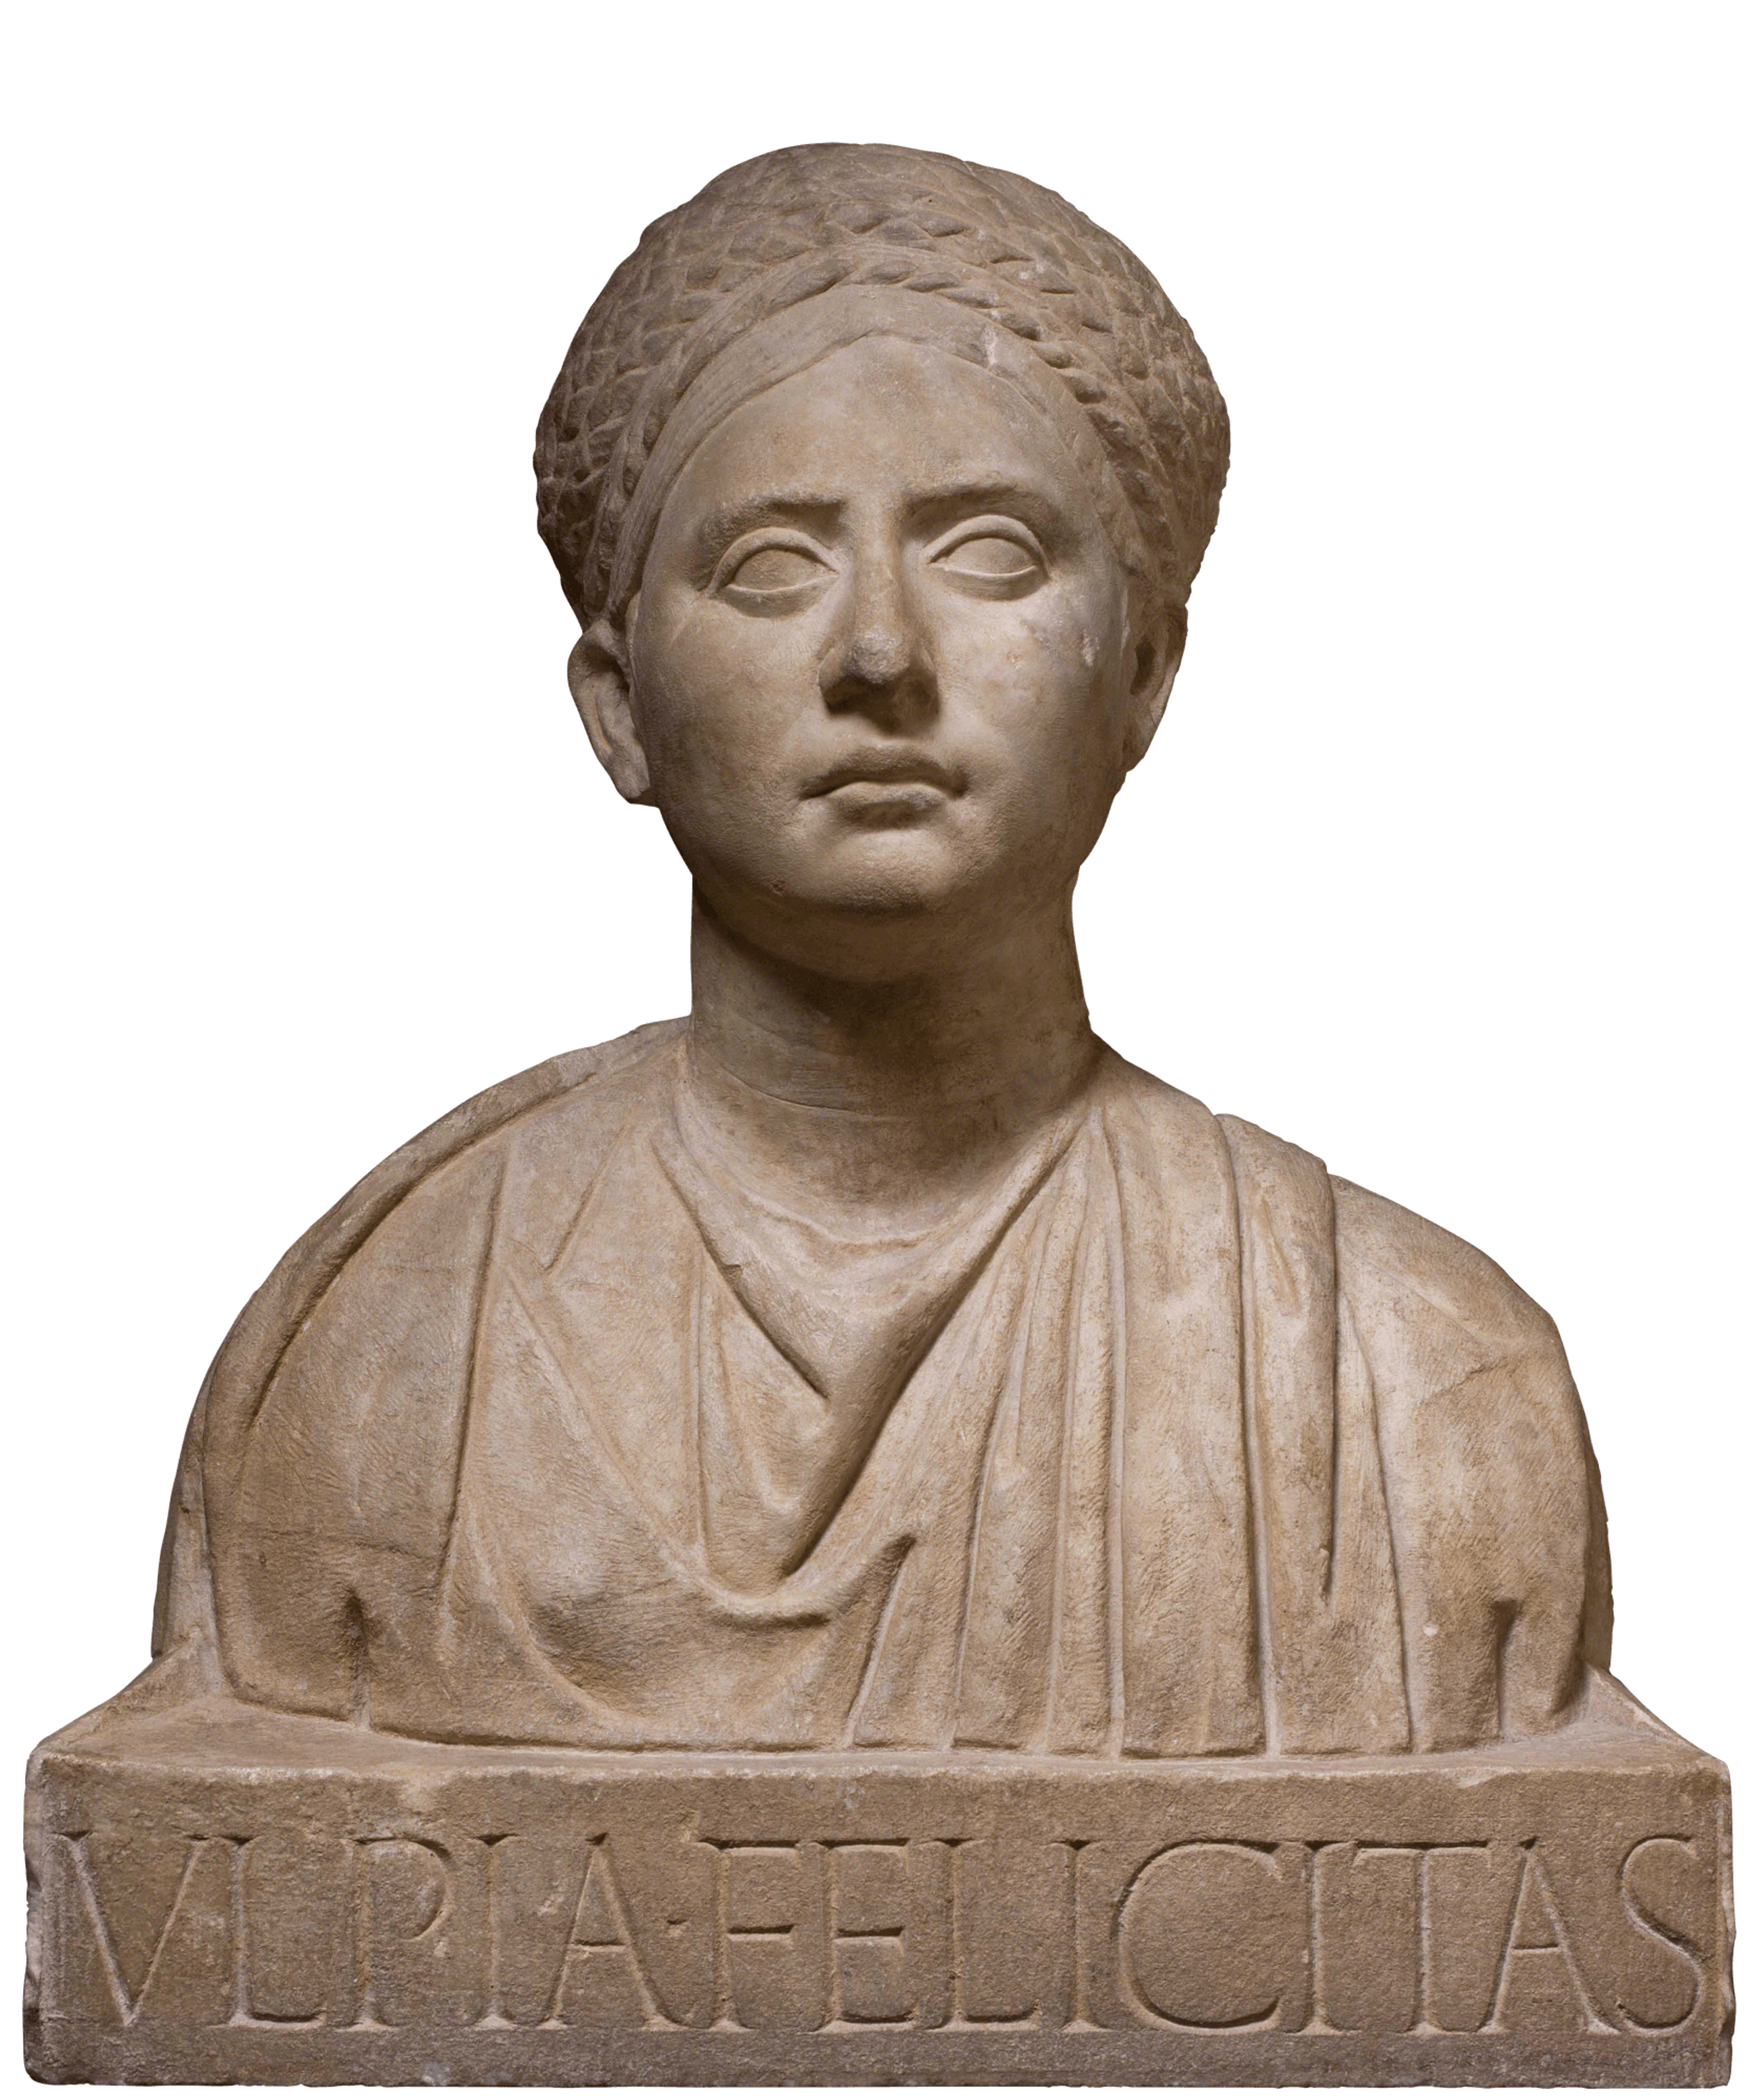 Alto rilievo con busto di Ulpia Felicitas 1 | Fondazione Santarelli